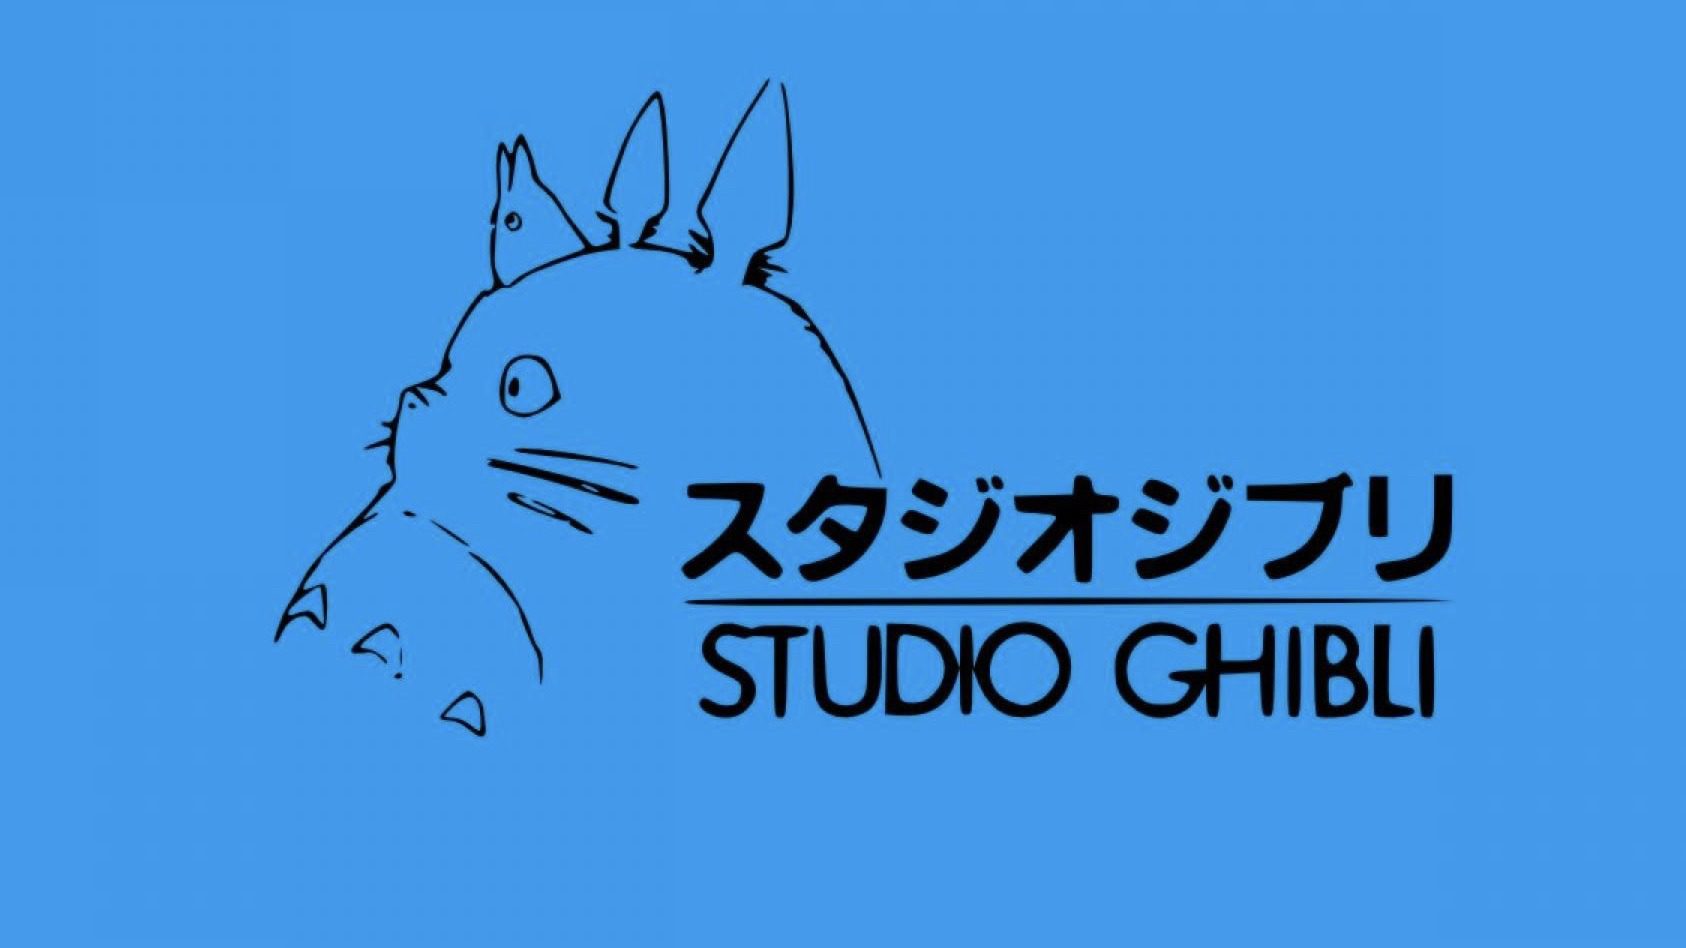 Studio Ghibli az önce gizemli bir Star Wars projesiyle dalga mı geçti?